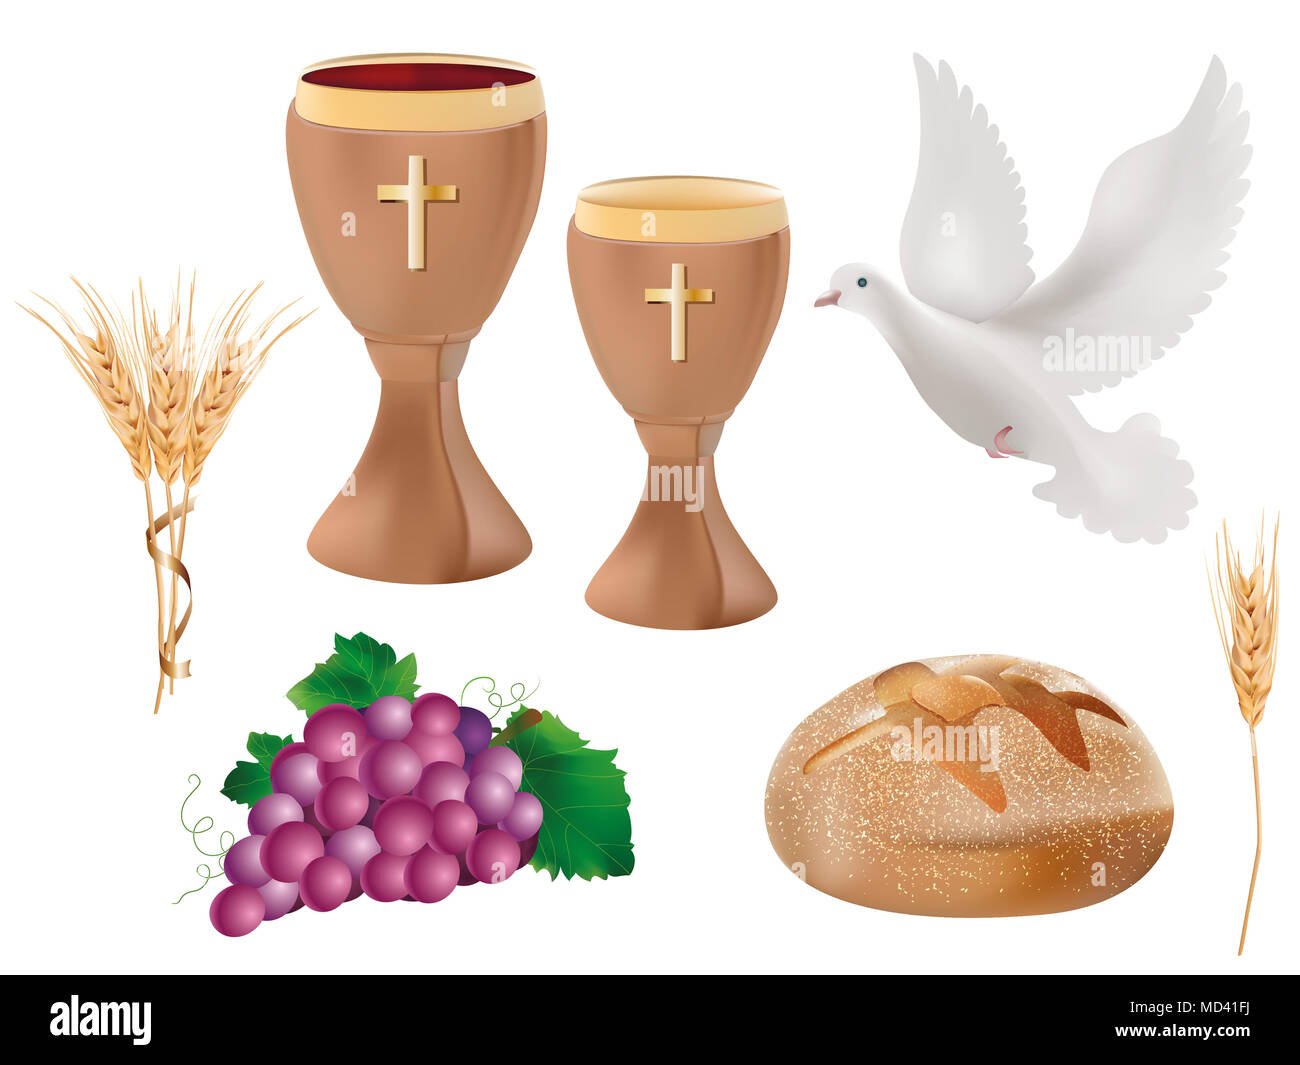 Isolierte christliche Symbole: Holzkelch mit Wein, Taube, Trauben, Brot, Weizenähren. Christliche Zeichen. Letzte Abendmahlssymbole.3D-realistische Abbildung Stockfoto